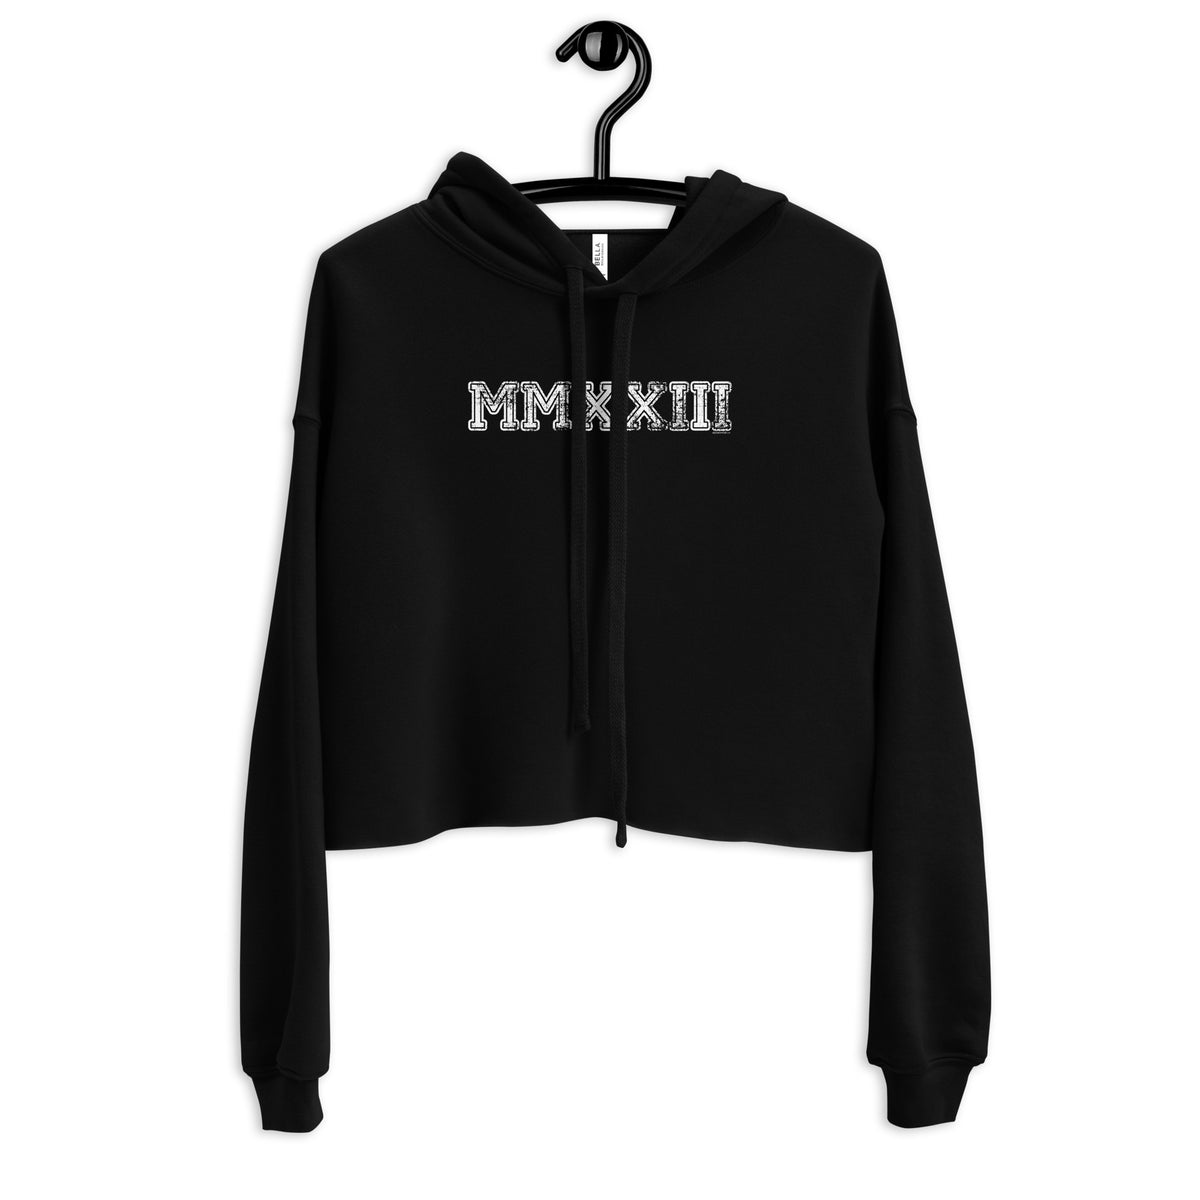 Class of 2023 MMXXIII Crop Hoodie Sweatshirt - Roman